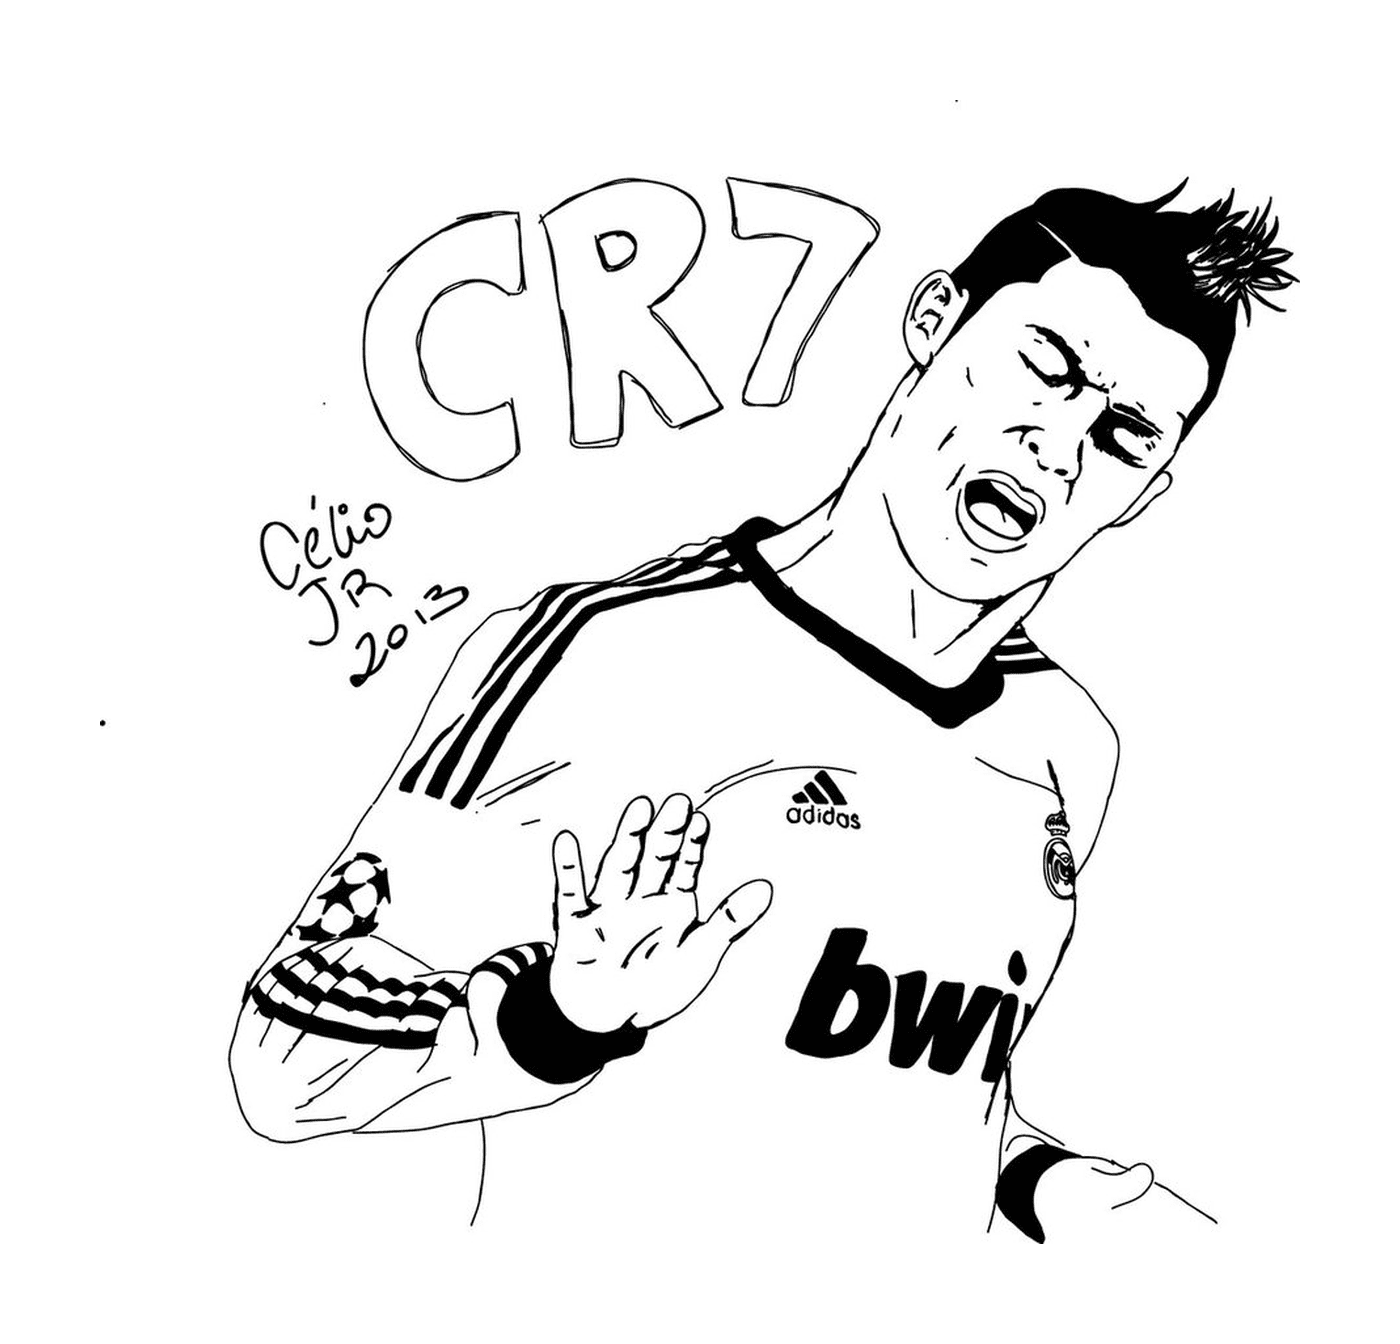  Cristiano Ronaldo festeggia un gol 